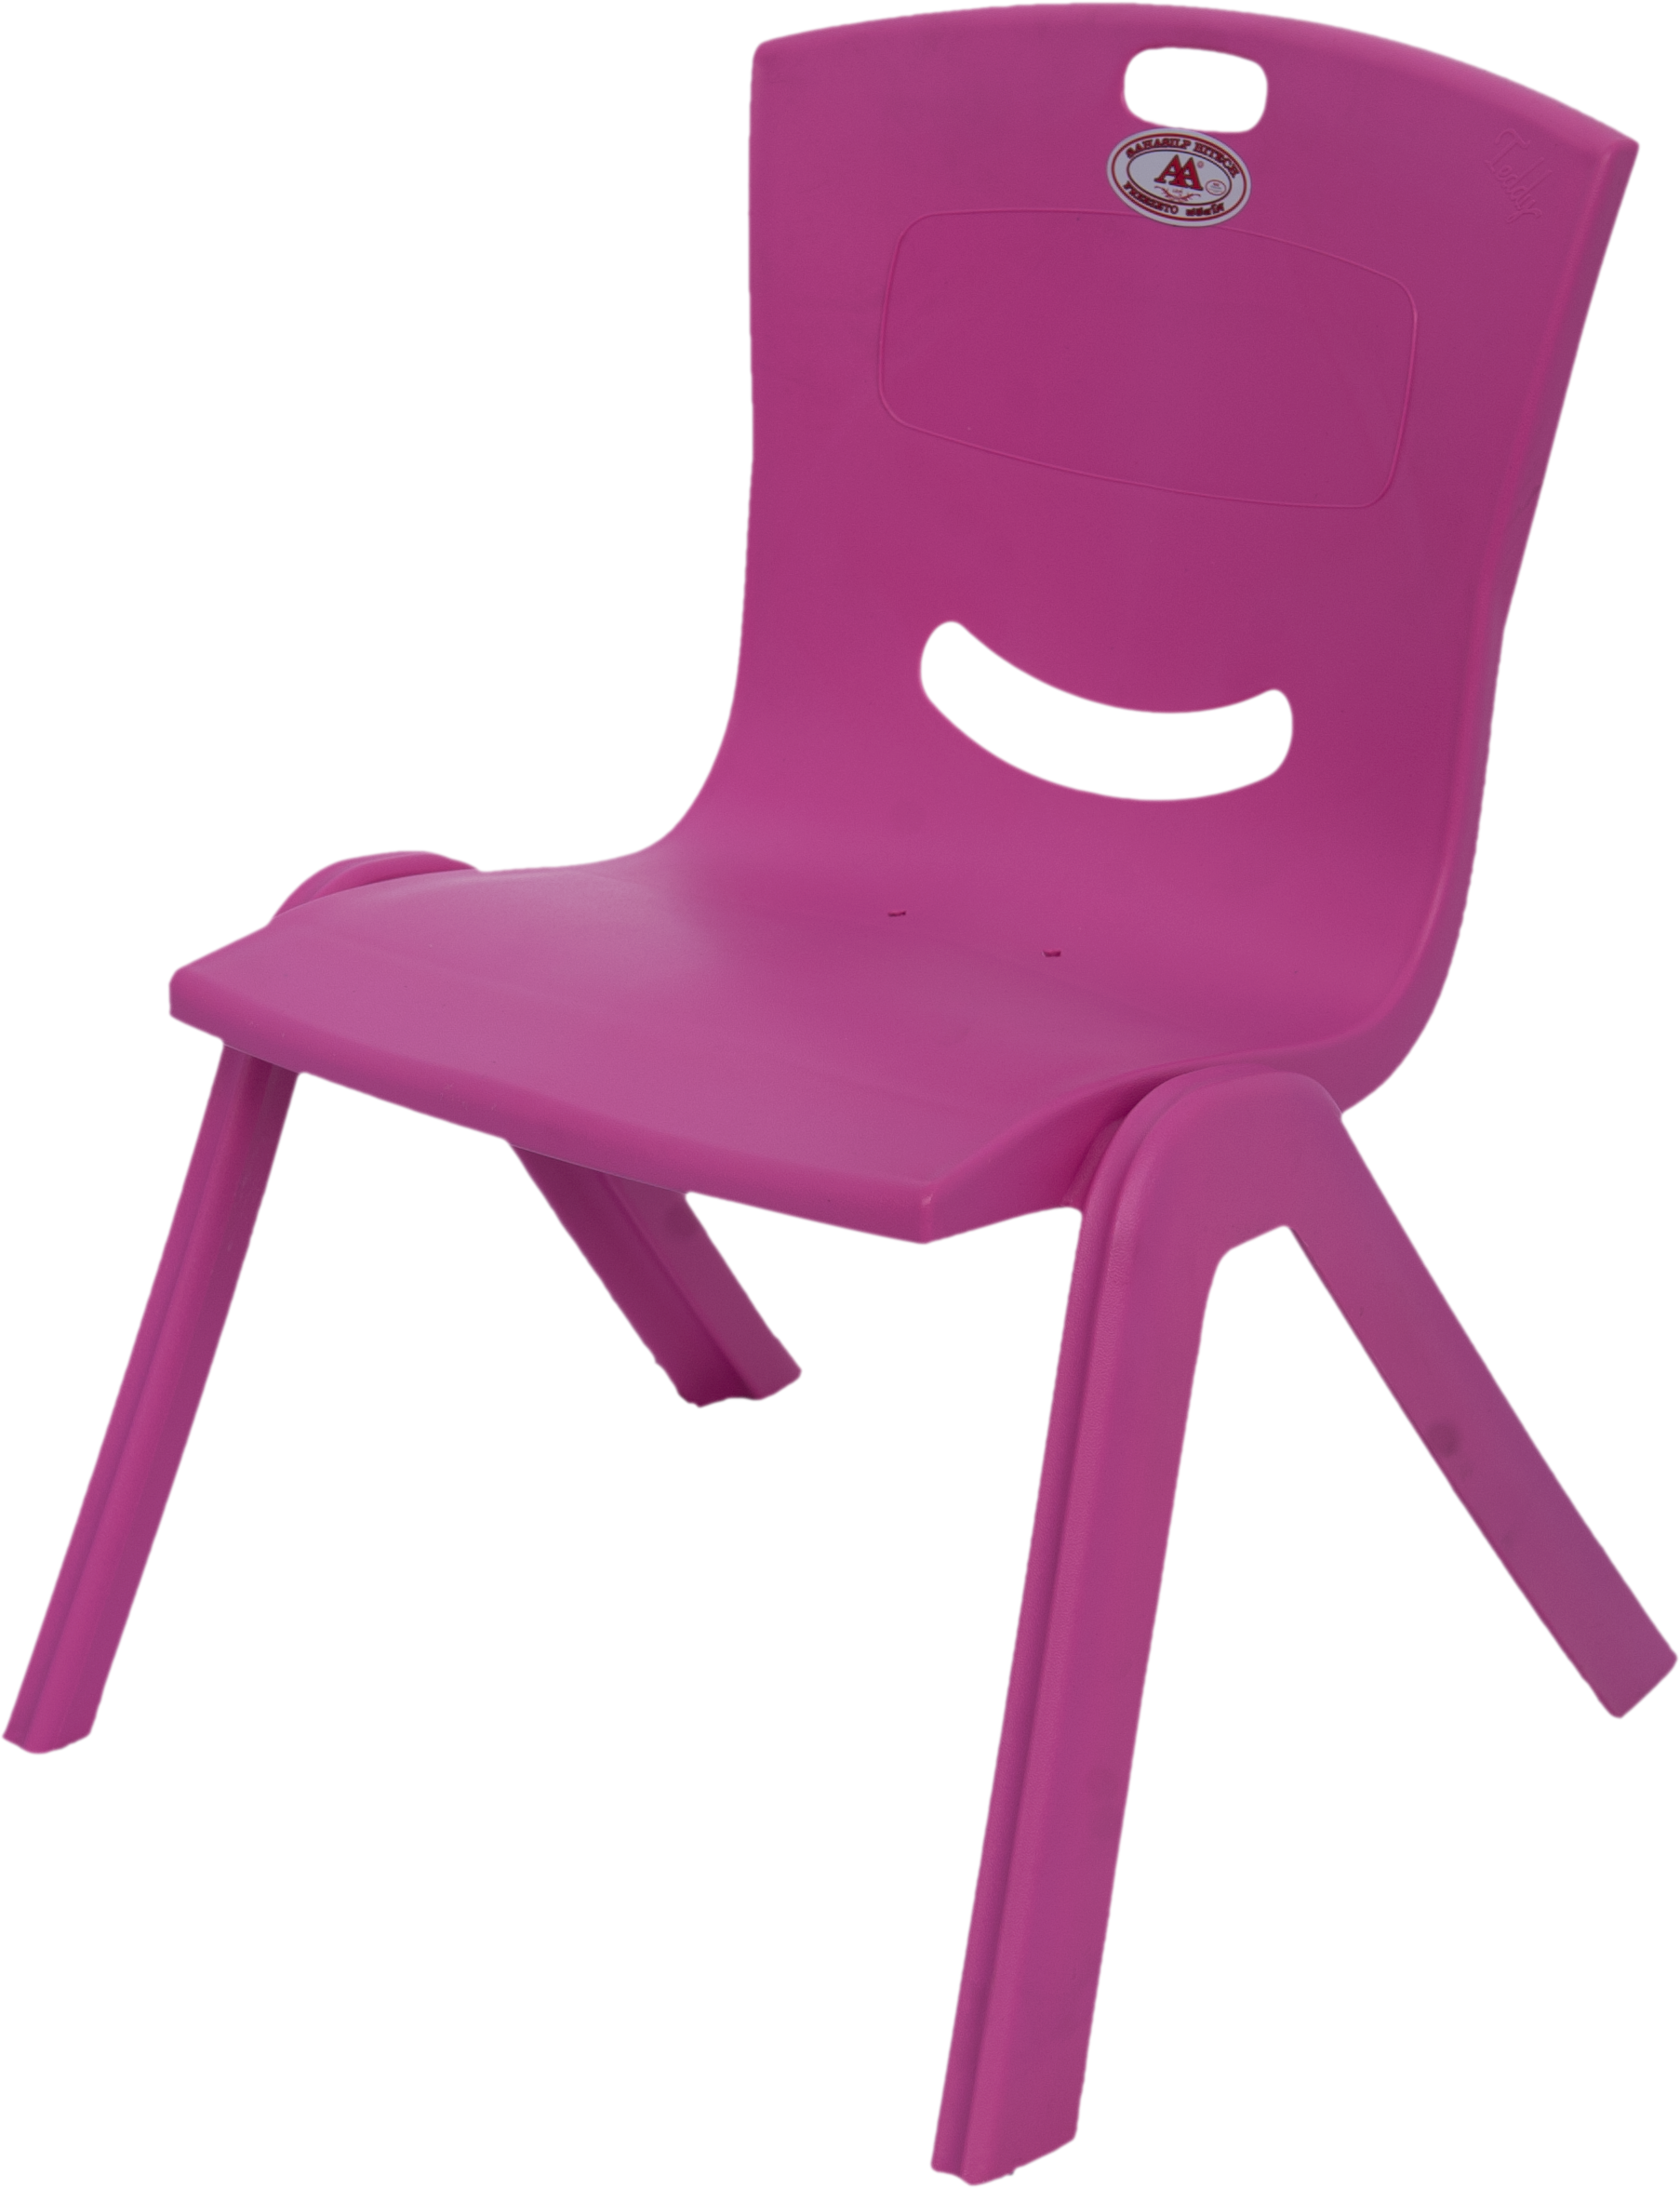 เก้าอีัพลาสติกพนักพิงทรงเตี้ย เก้าอี้เด็กรุ่นเท็ดดี้ พลาสติกเนื้อหนา แข็งแรง ขนาด : 38 x 39 x 52.5 (H) ซม. (ความสูงจากพื้นถึงที่นั่ง 28 cm.)